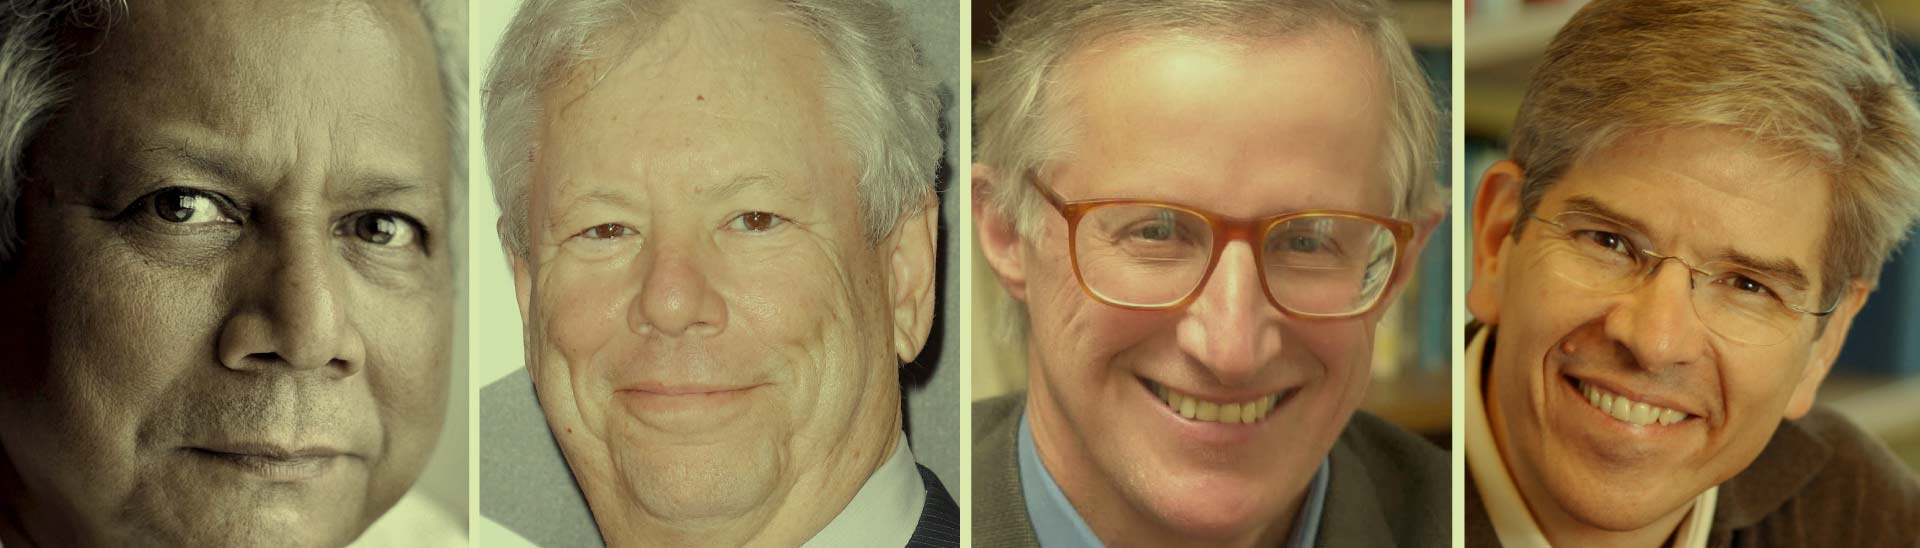 Romer, Nordhaus, Thaler y Yunus son cuatro grandes economistas que ganaron el Premio Nobel por sus ideas innovadoras.